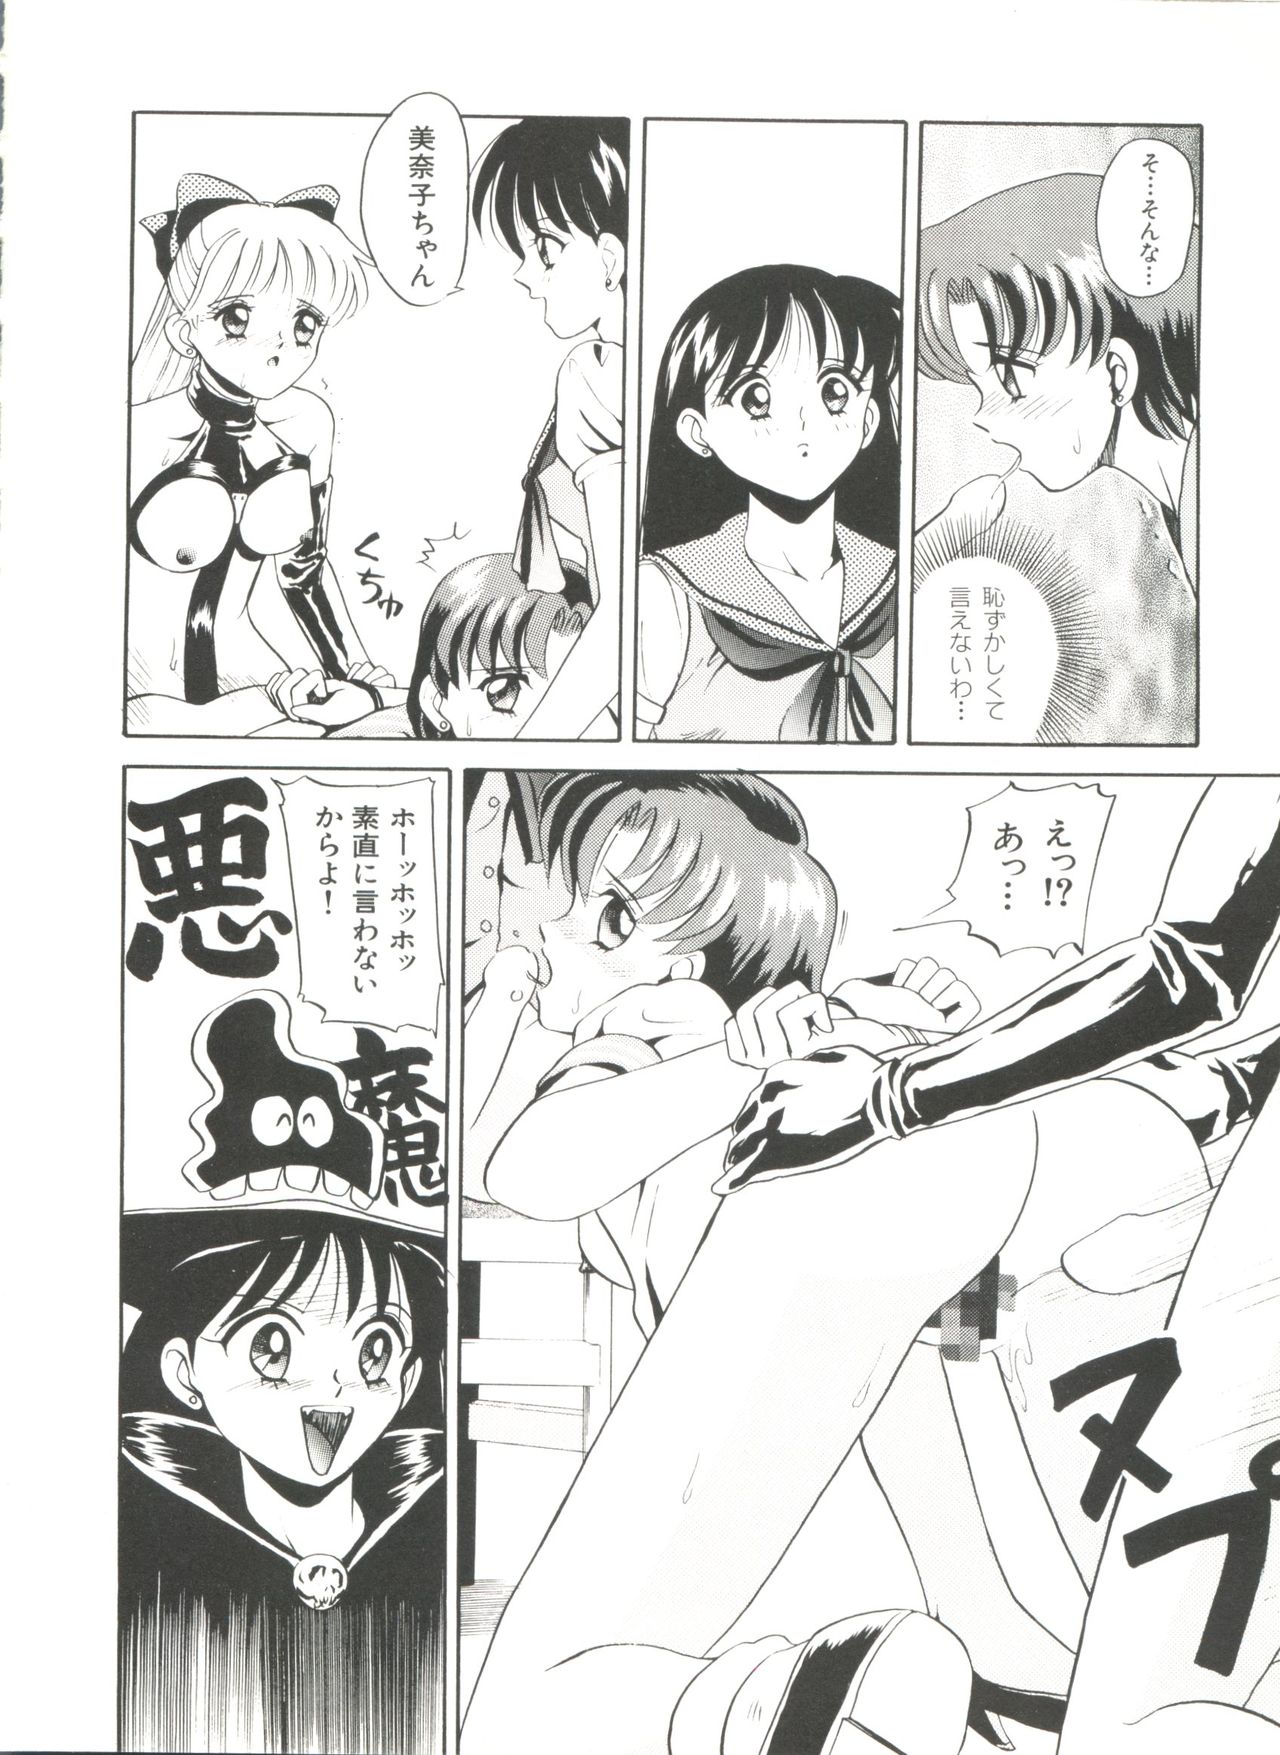 [Anthology] Bishoujo Doujinshi Anthology 18 - Moon Paradise 11 Tsuki no Rakuen (Bishoujo Senshi Sailor Moon) page 22 full